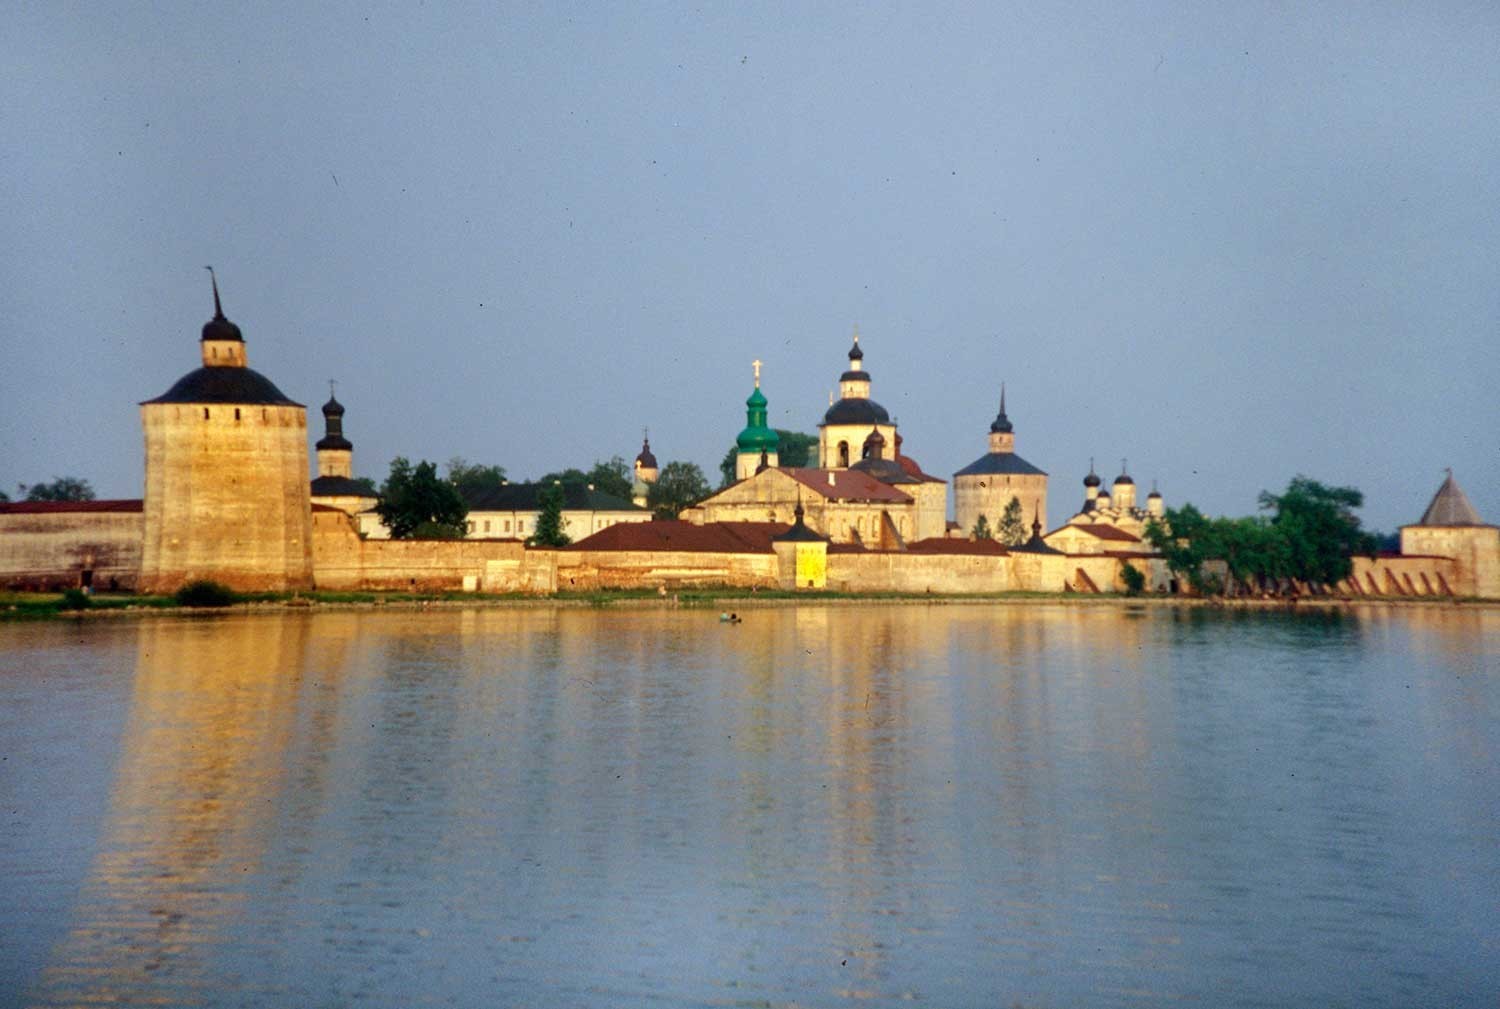 Manastir svetog Ćirila Bjelozjerskog. Pogled s jugozapadne strane, preko jezera Sivjerskoje. 14. srpnja 1999.